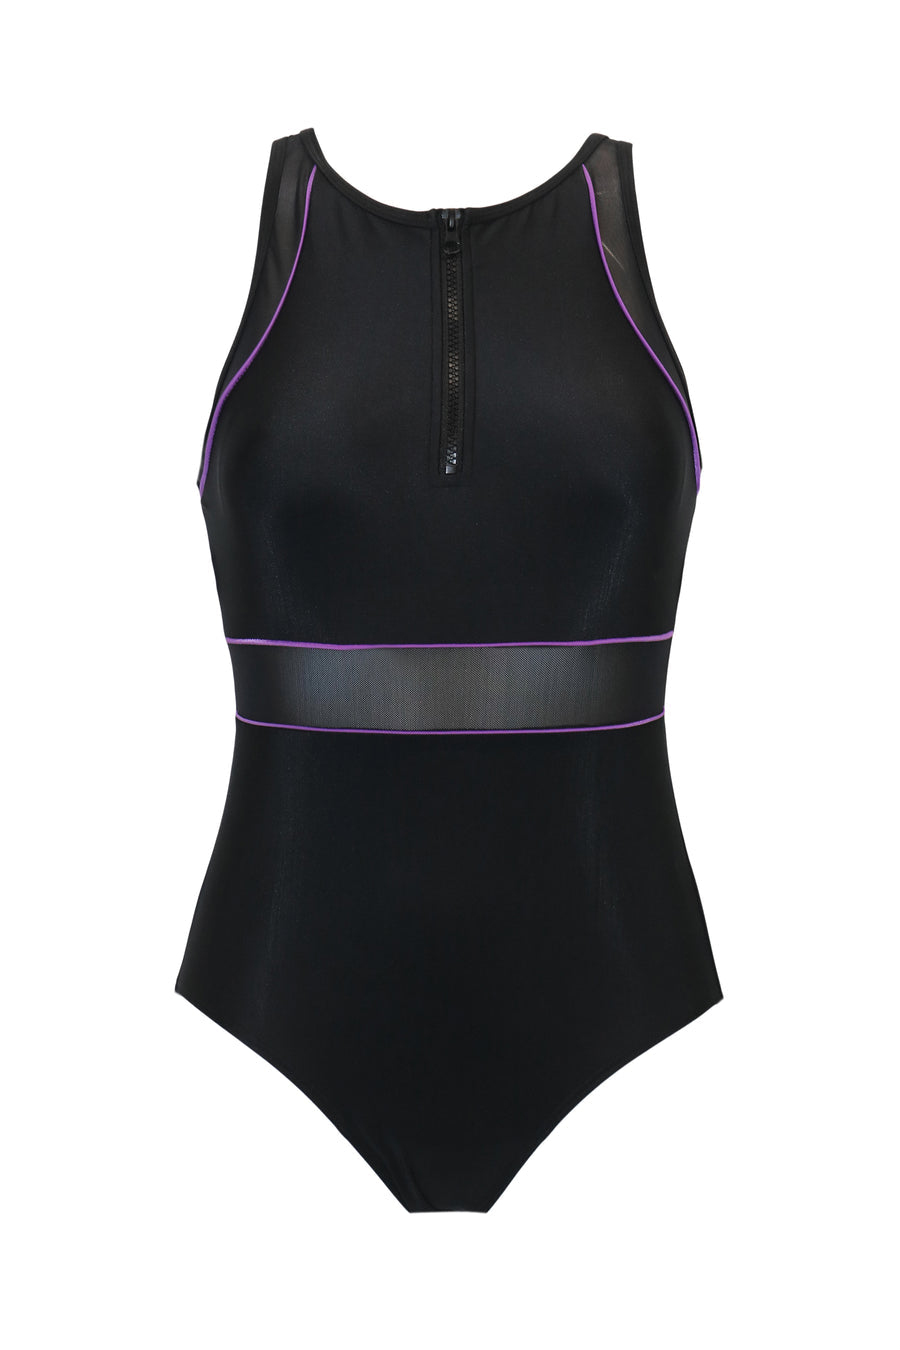 Pour Moi Energy Chlorine Resistant High Neck Zip Front Swimsuit - Black/Purple